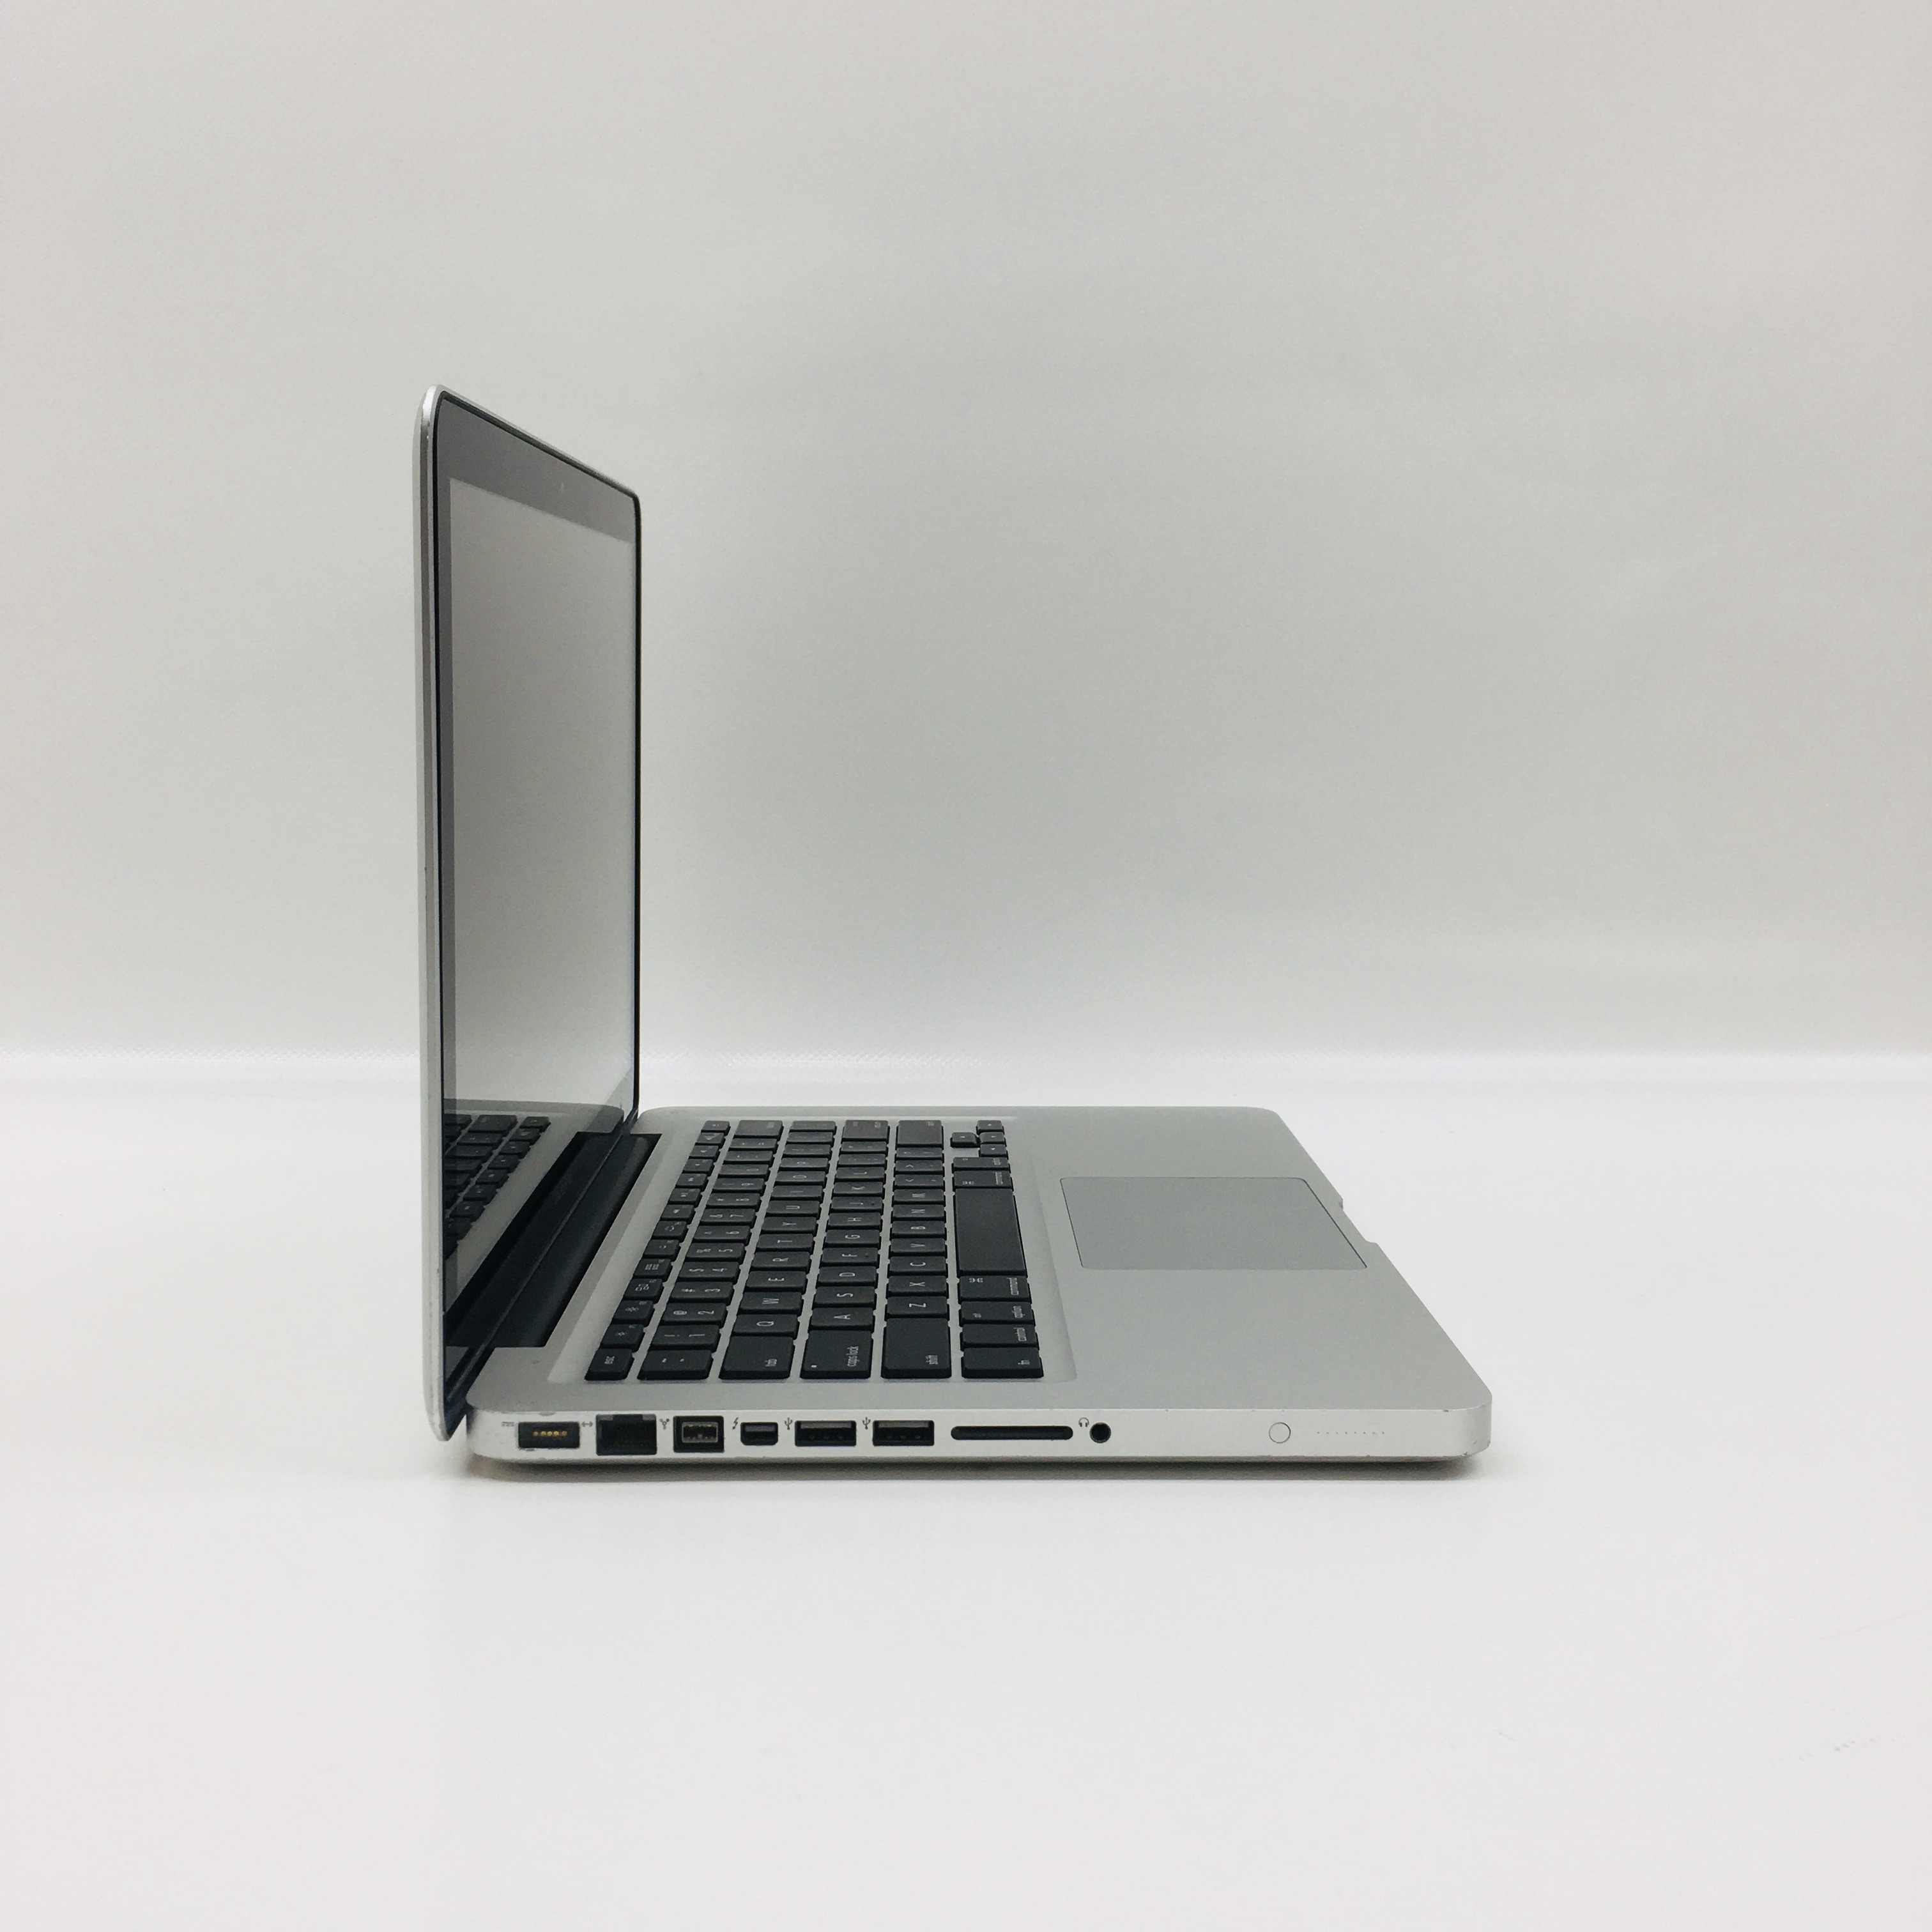 MacBook Pro 13" Mid 2012 (Intel Core i5 2.5 GHz 4 GB RAM 500 GB HDD), Intel Core i5 2.5 GHz, 4 GB RAM, 500 GB HDD, image 2